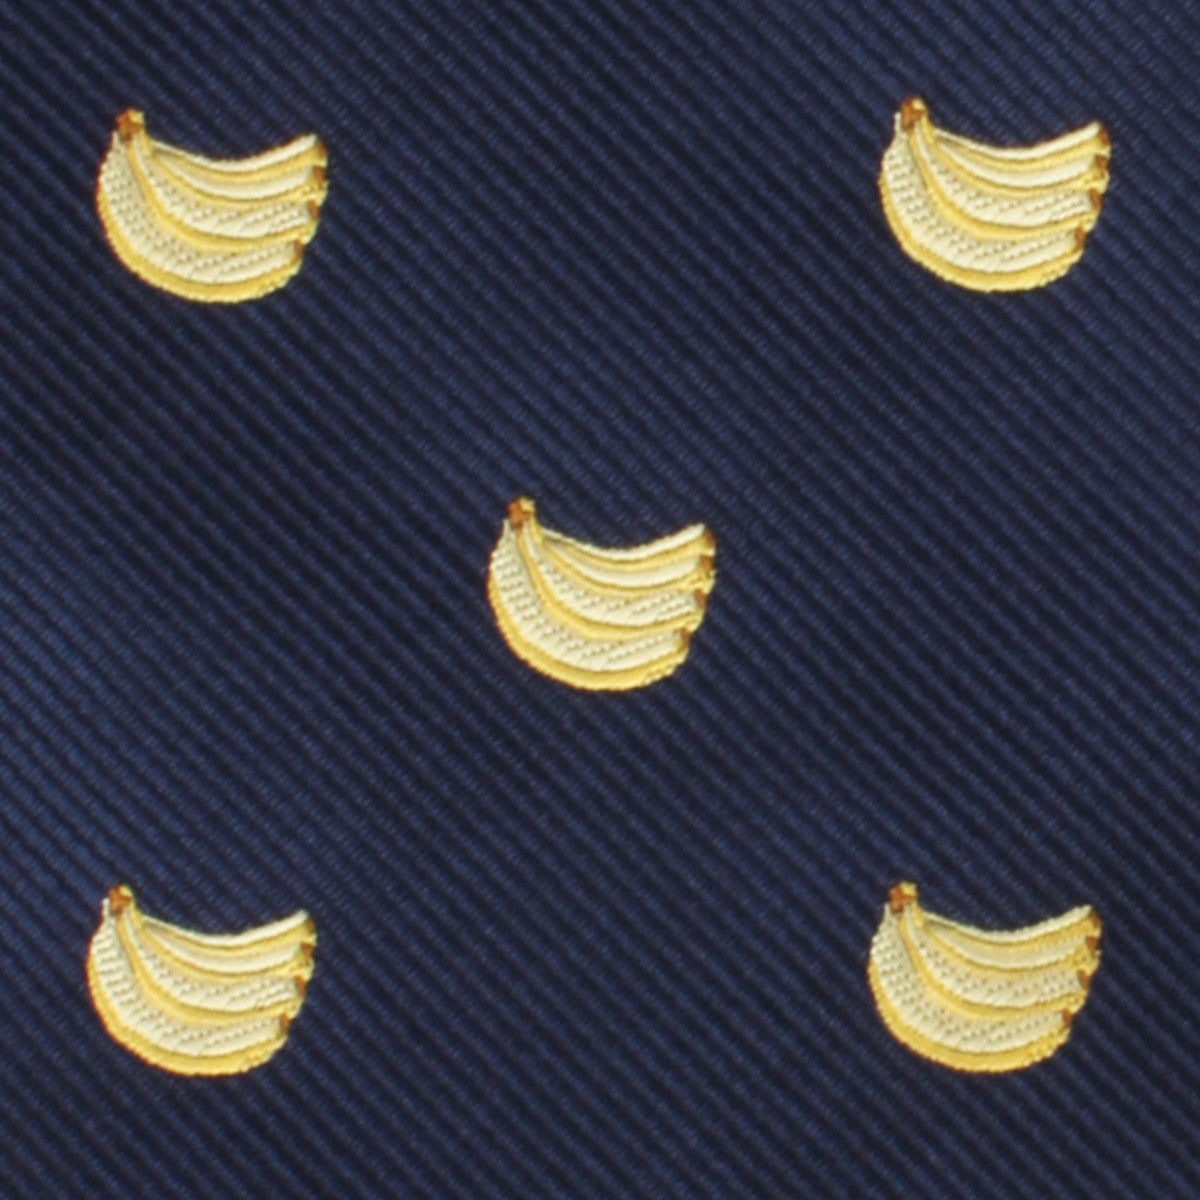 Fijian Banana Pocket Square Fabric